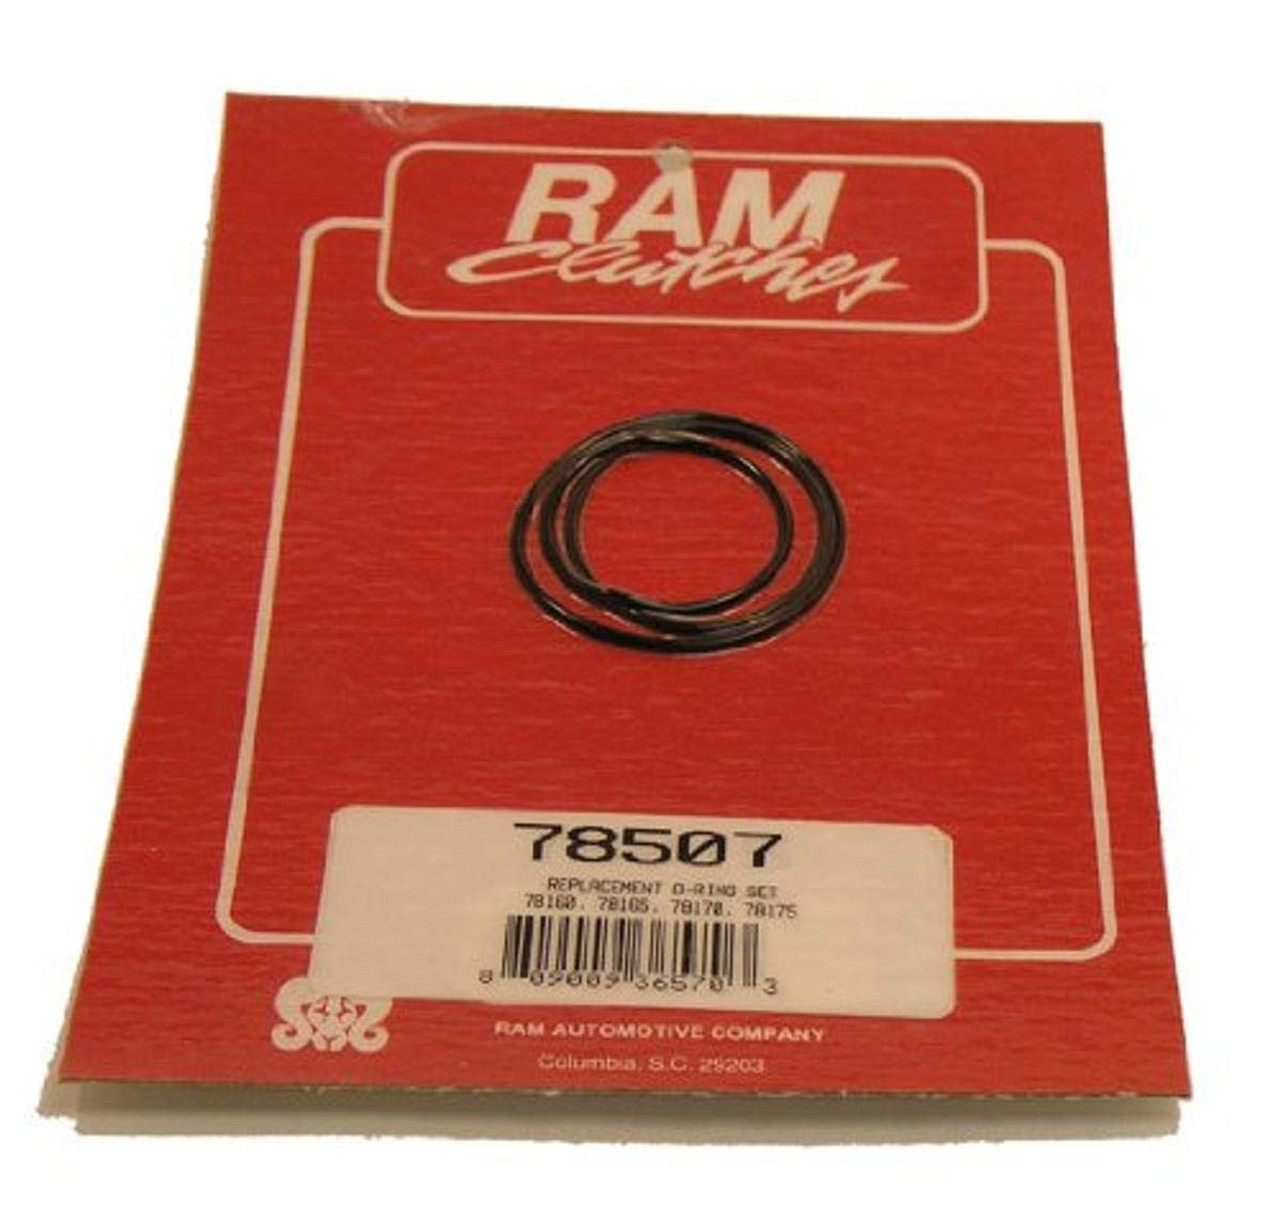 Ram Clutch 78509